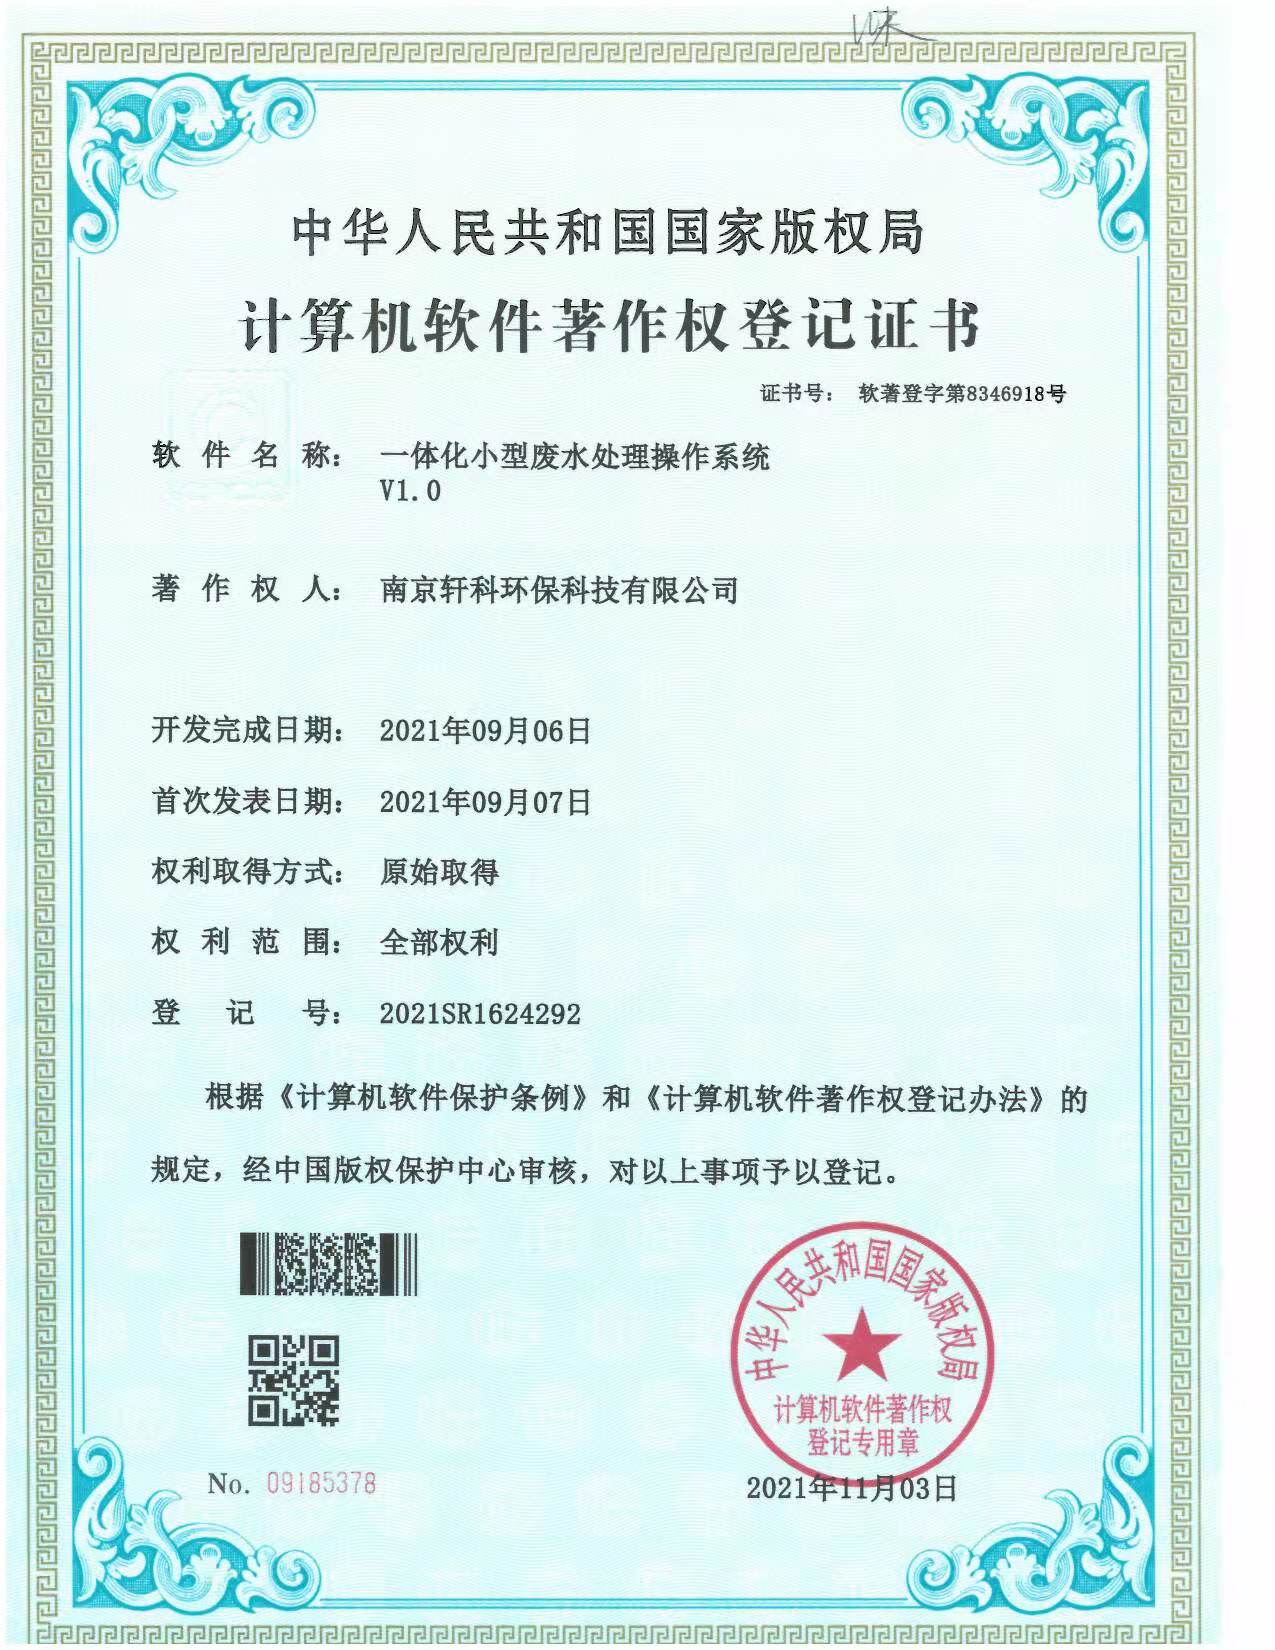 武汉小型一体化废水处理系统软件著作权证书